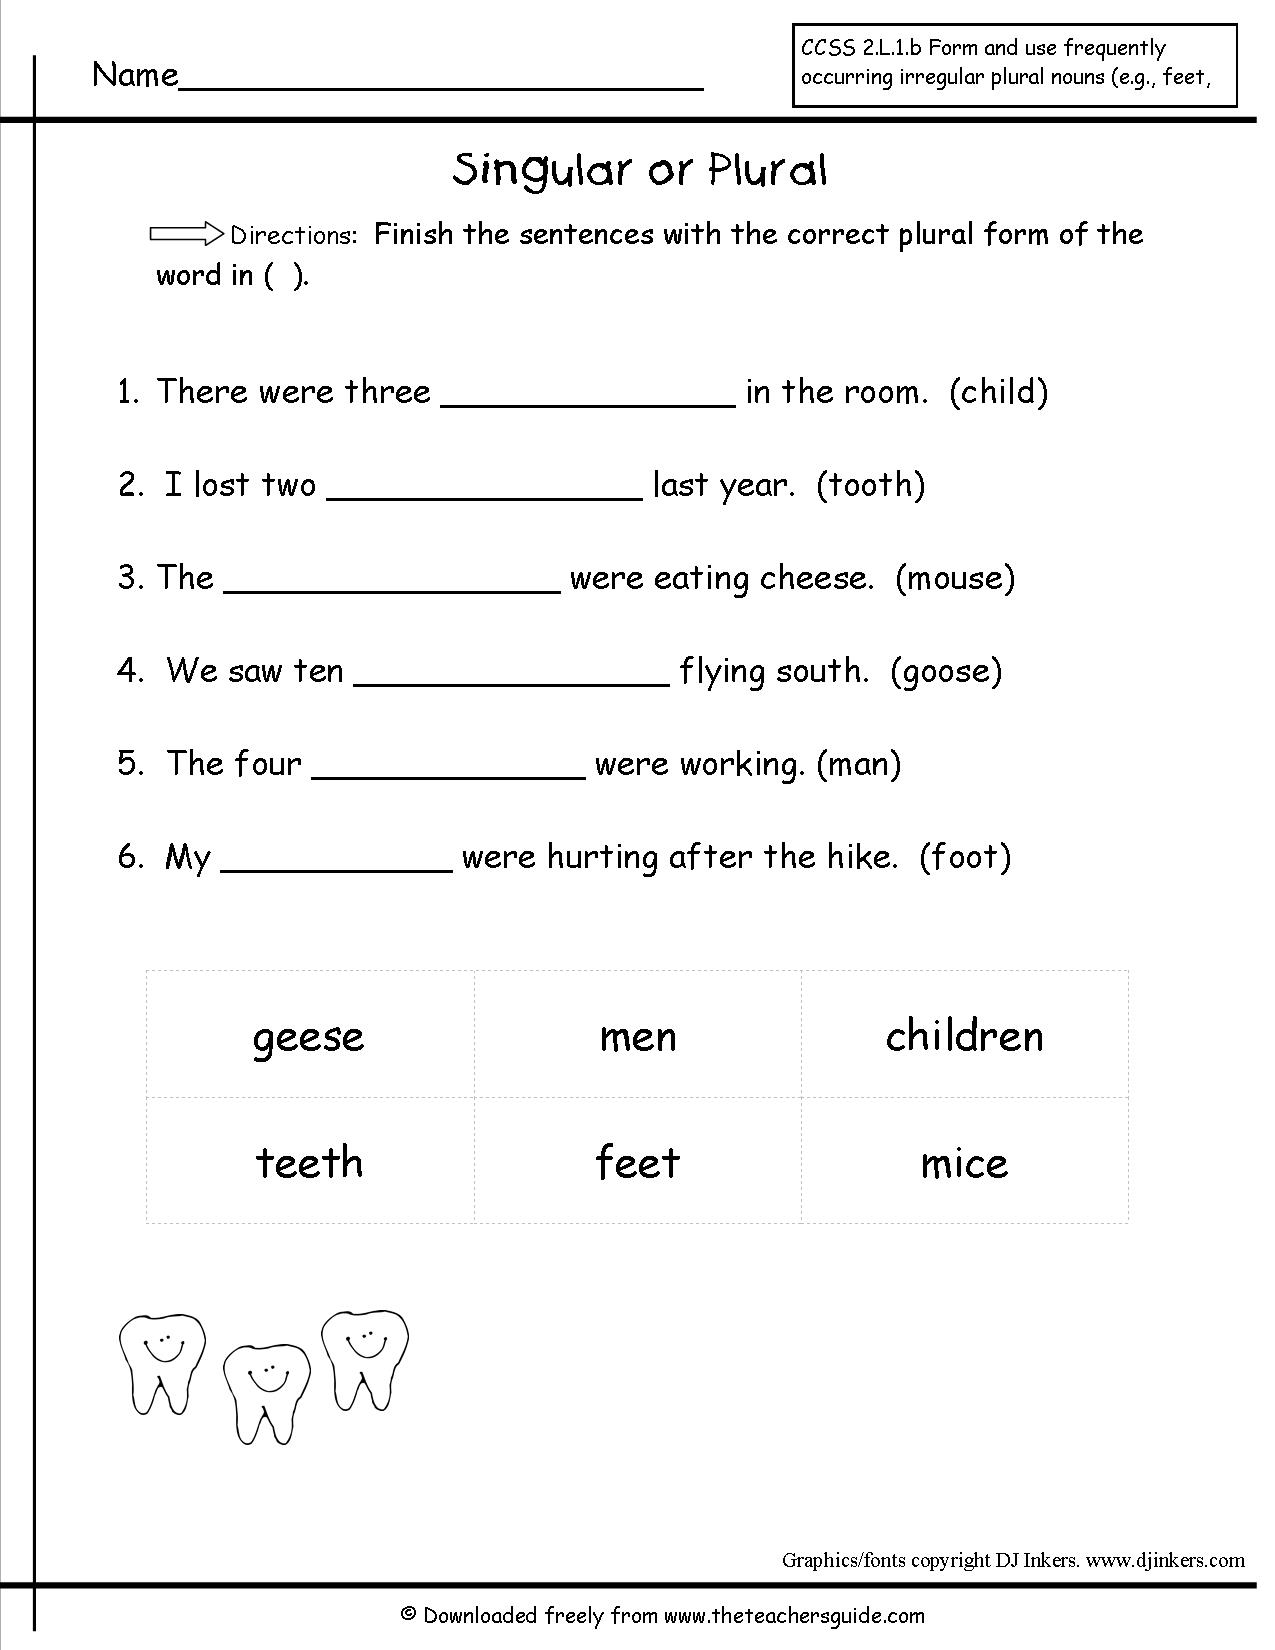 Irregular Plural Nouns Worksheet 2nd Grade Image